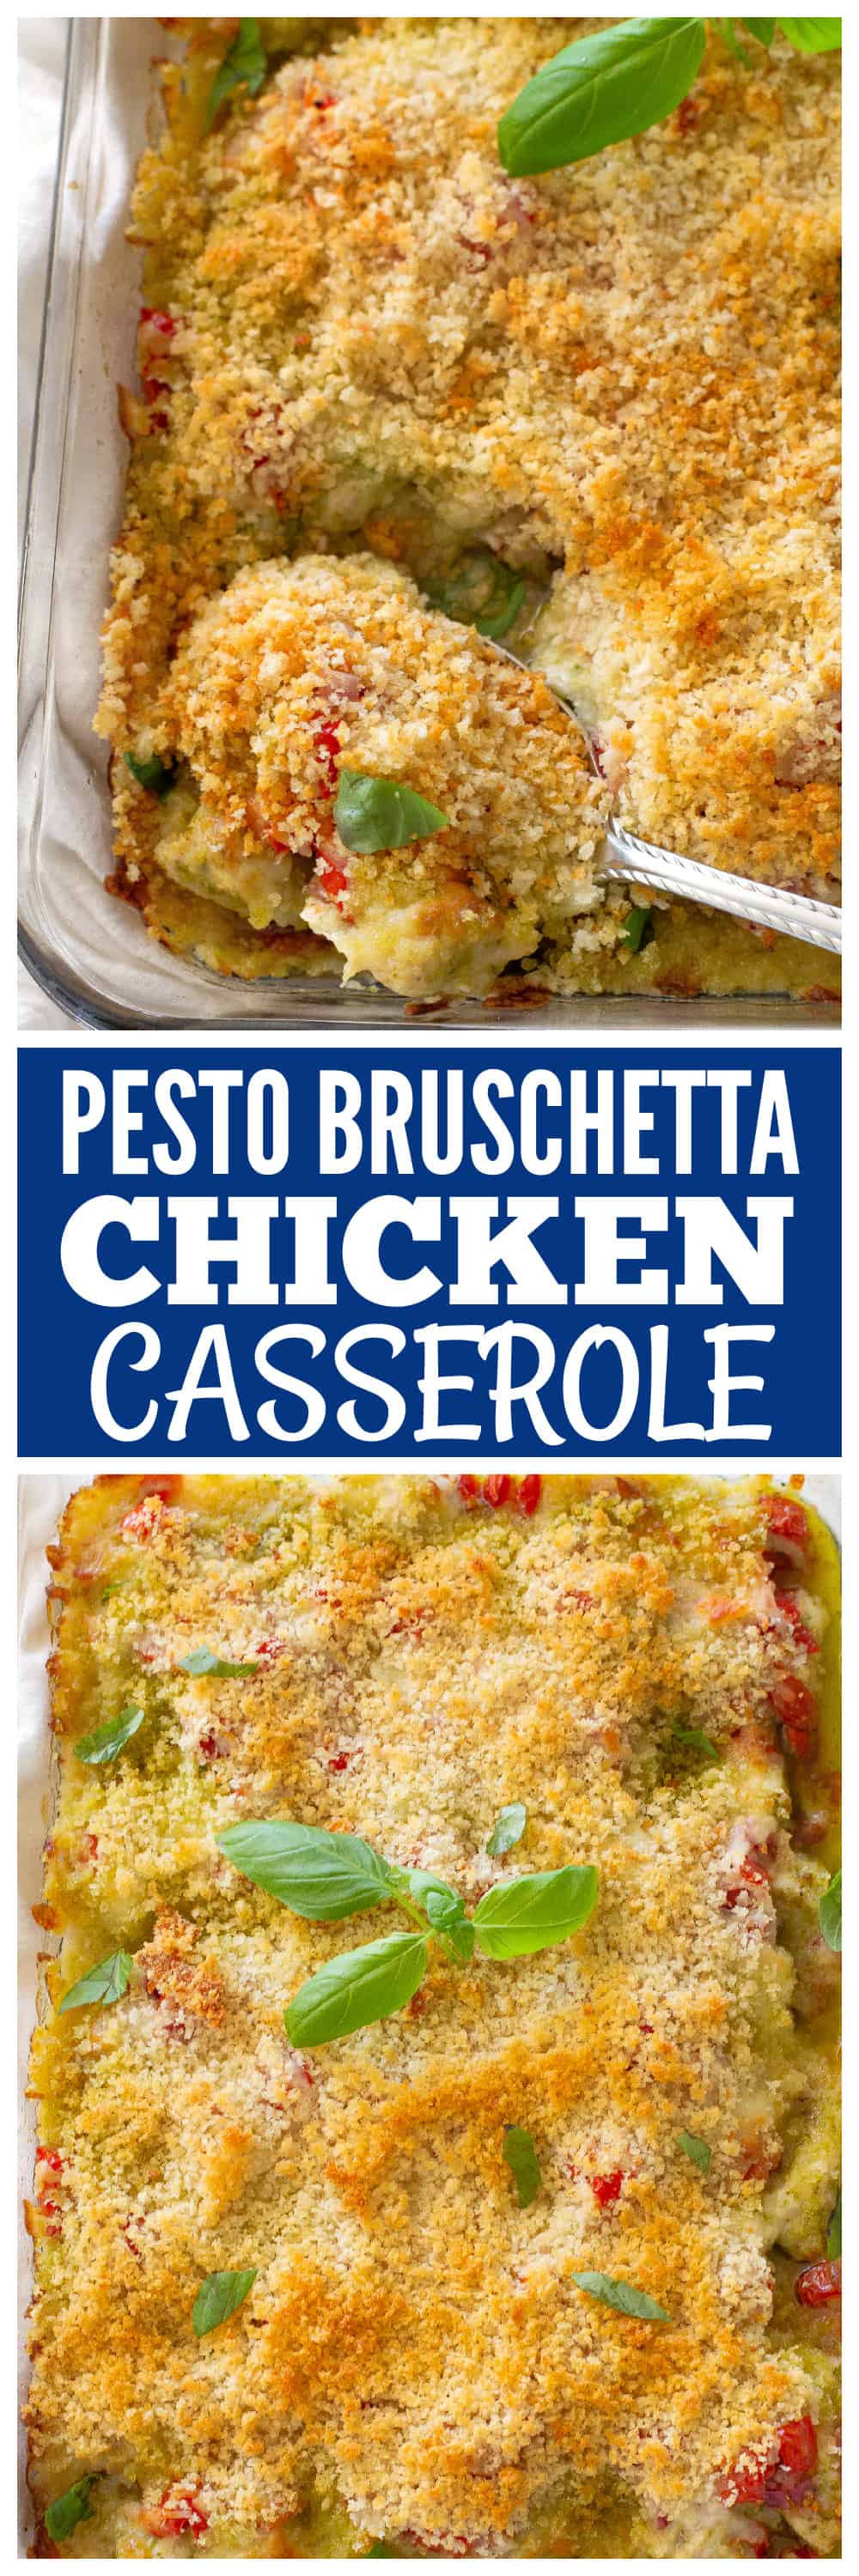 Bruschetta Pesto Chicken Casserole